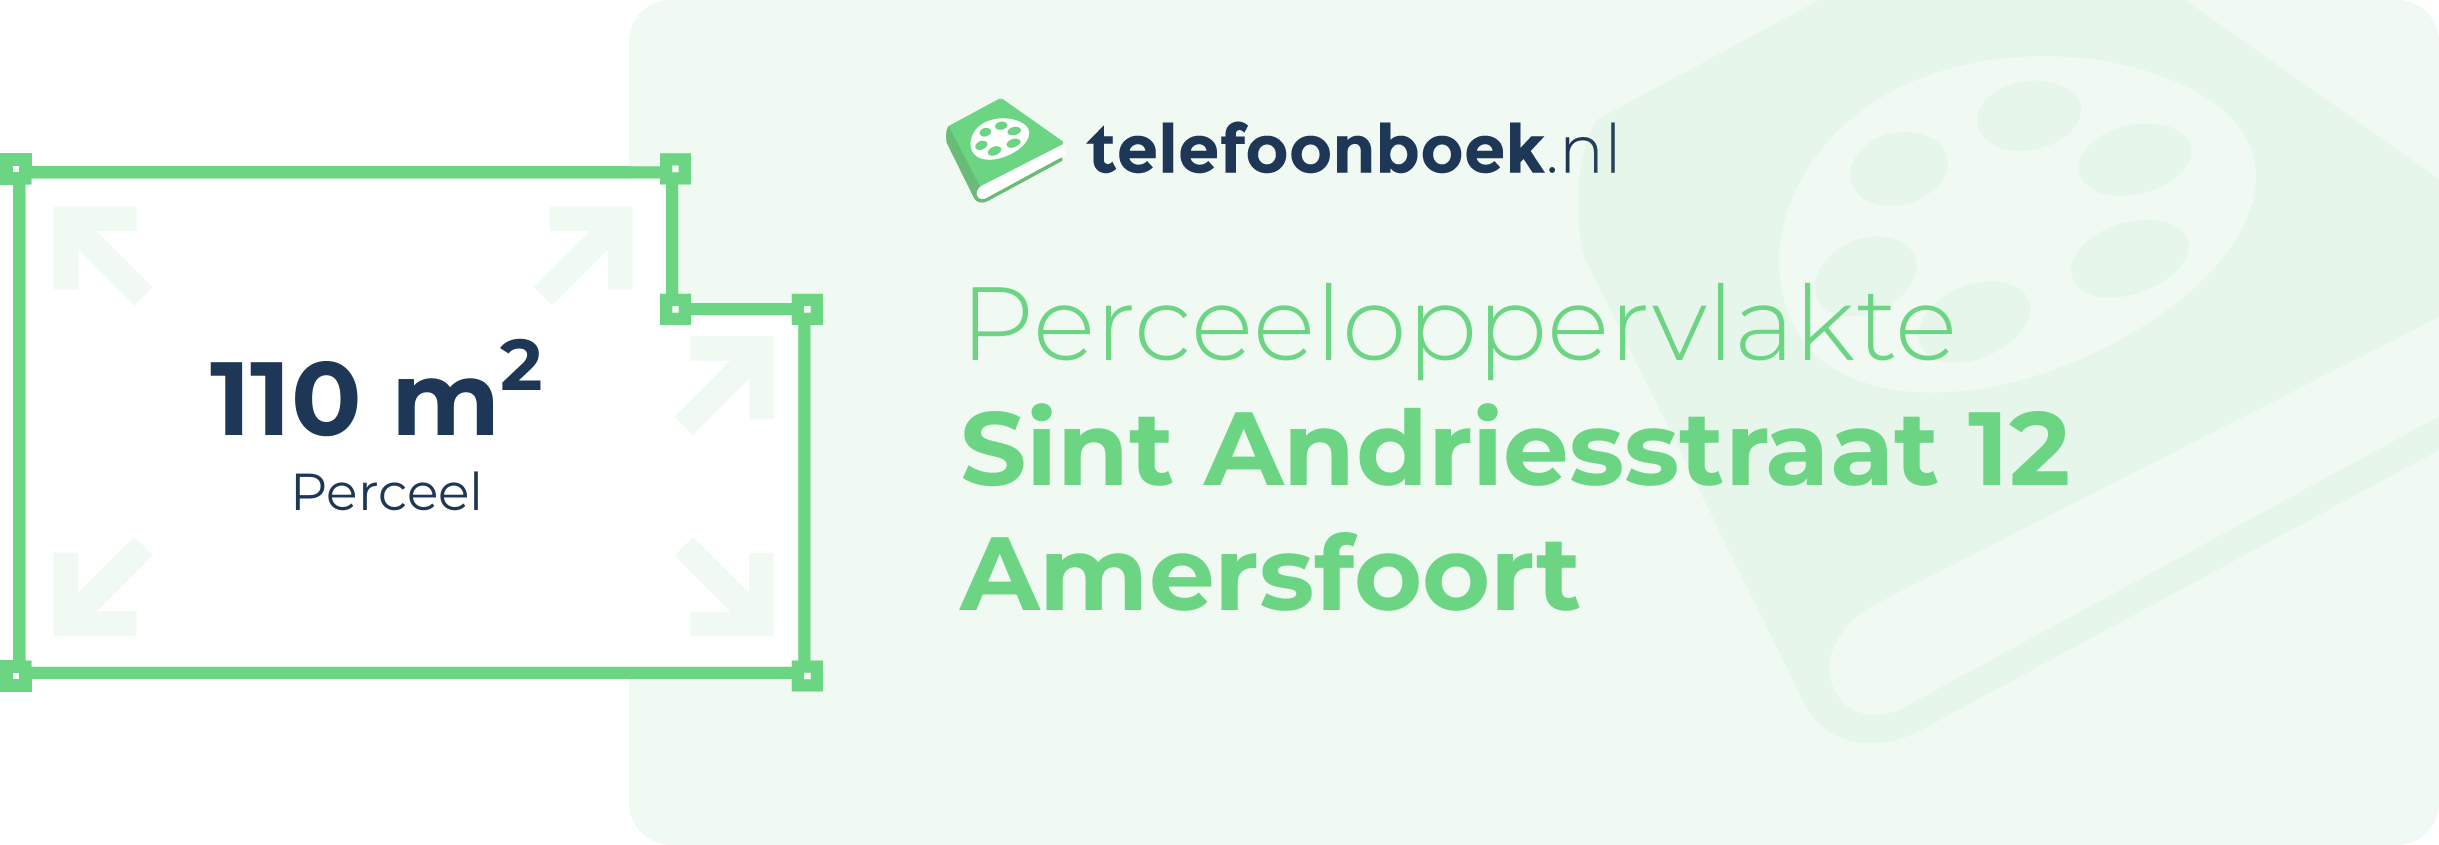 Perceeloppervlakte Sint Andriesstraat 12 Amersfoort